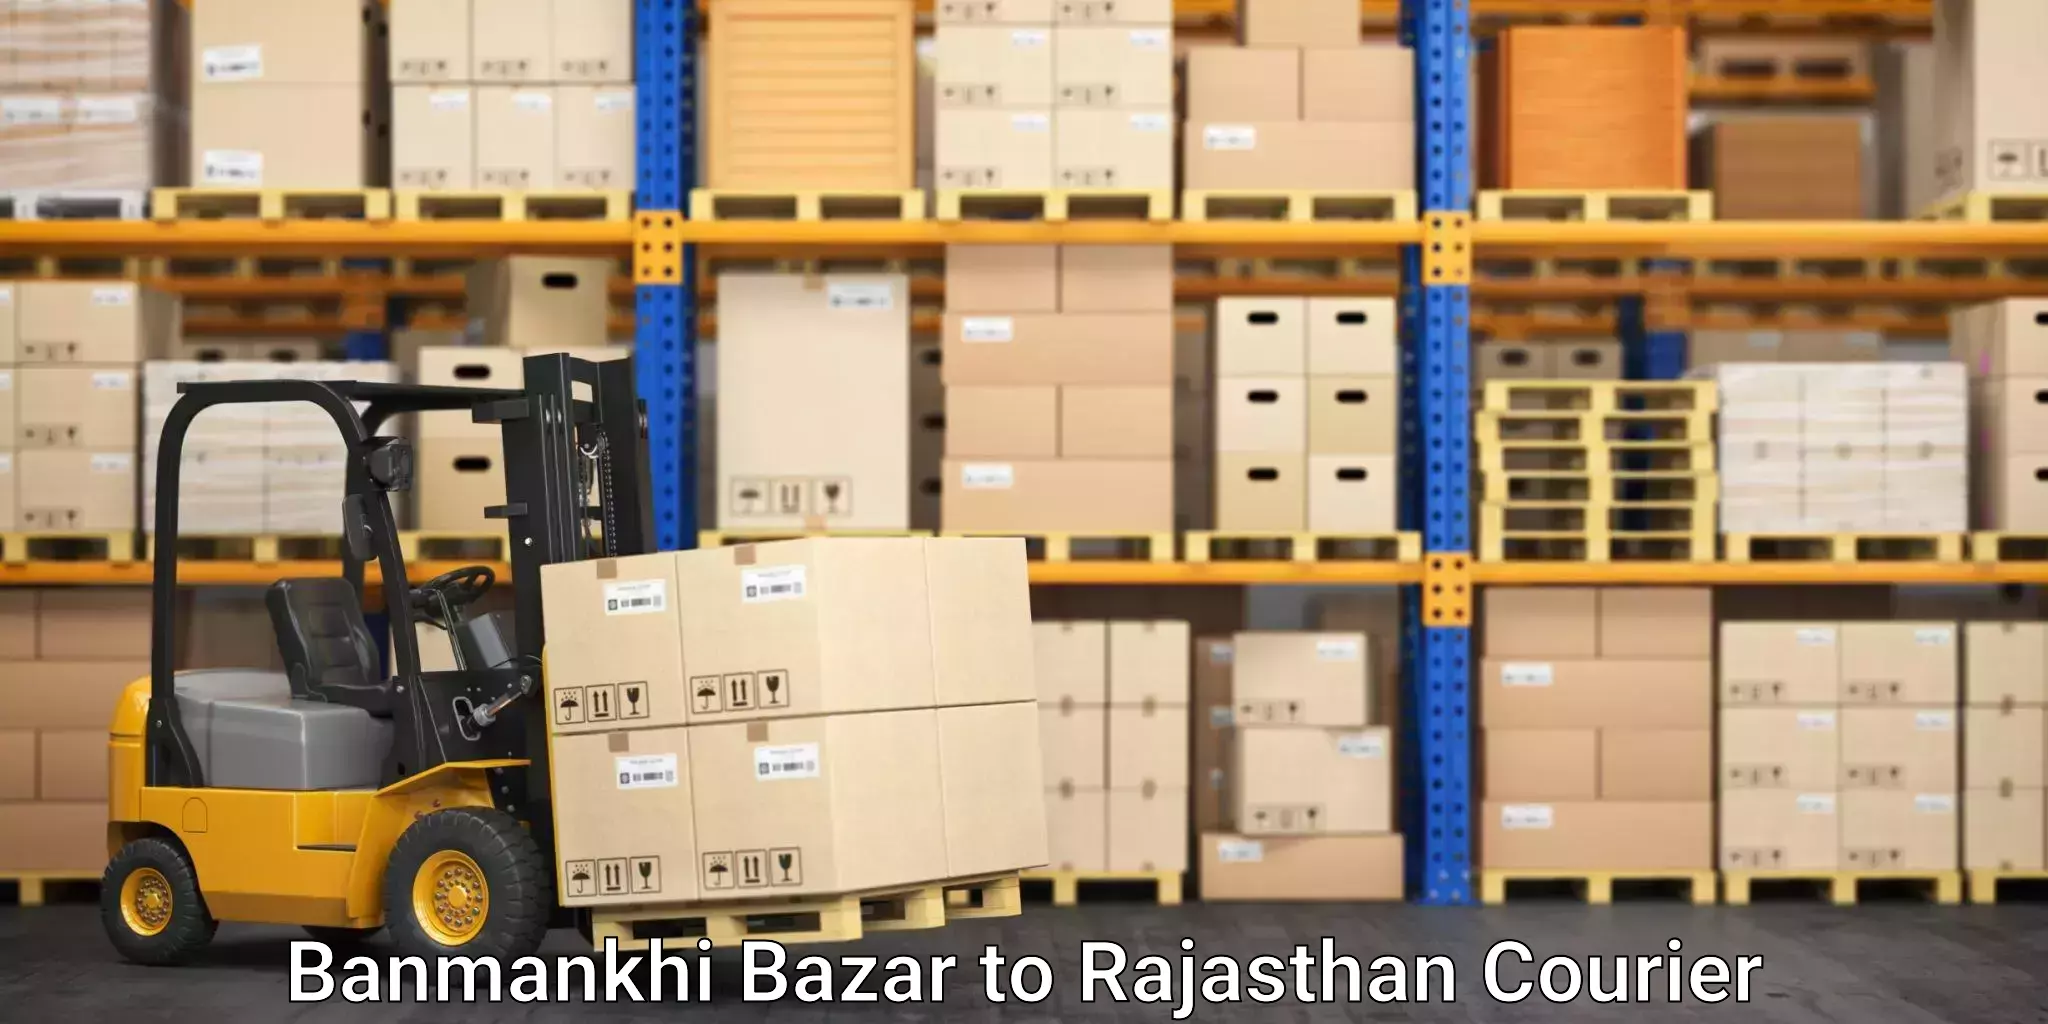 Stress-free moving Banmankhi Bazar to Rajasthan